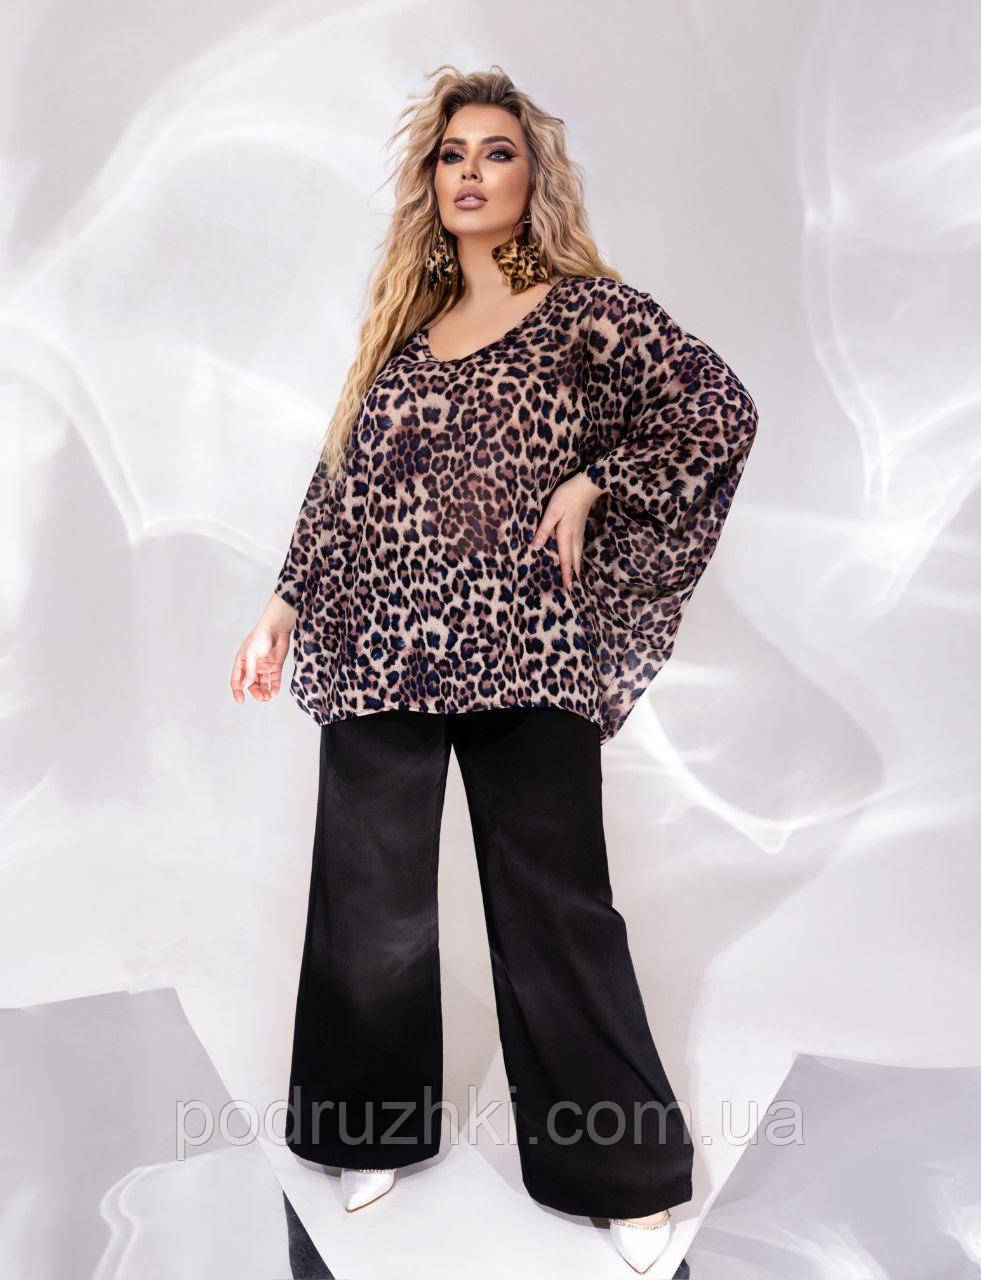 Жіноча стильна блузка туніка вільного розміру 48-58 Oversiz (забарвлення)